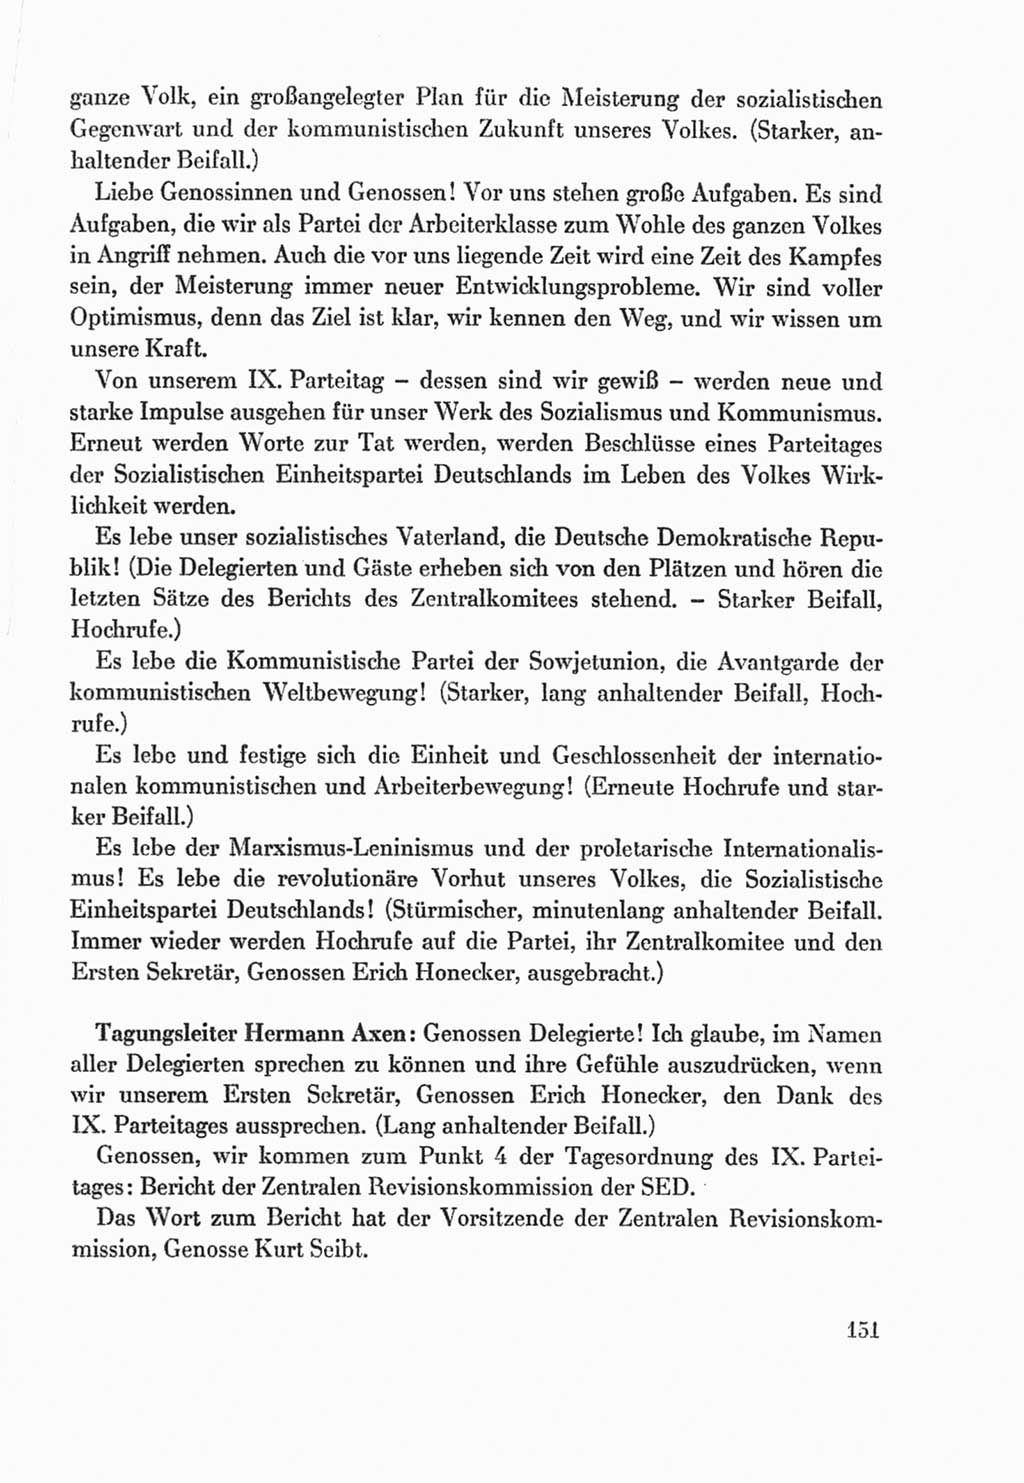 Protokoll der Verhandlungen des Ⅸ. Parteitages der Sozialistischen Einheitspartei Deutschlands (SED) [Deutsche Demokratische Republik (DDR)] 1976, Band 1, Seite 151 (Prot. Verh. Ⅸ. PT SED DDR 1976, Bd. 1, S. 151)